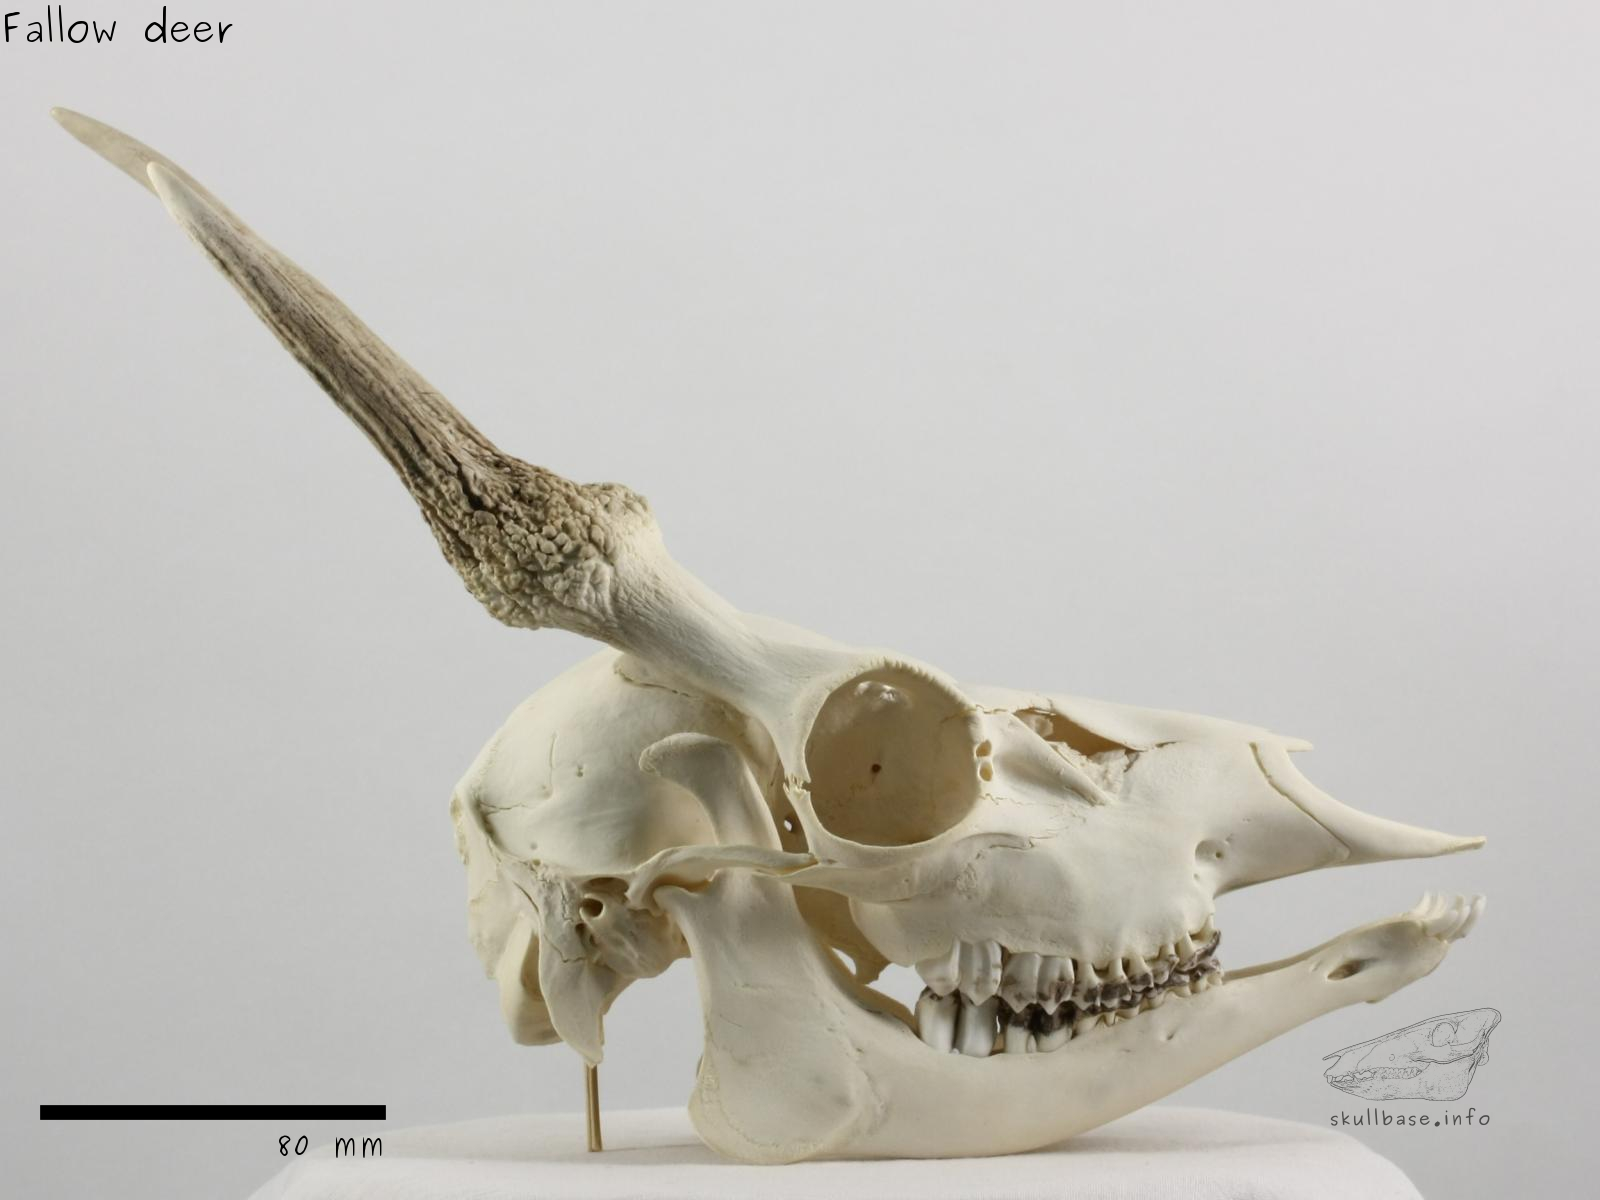 Fallow deer (Dama dama) skull lateral view